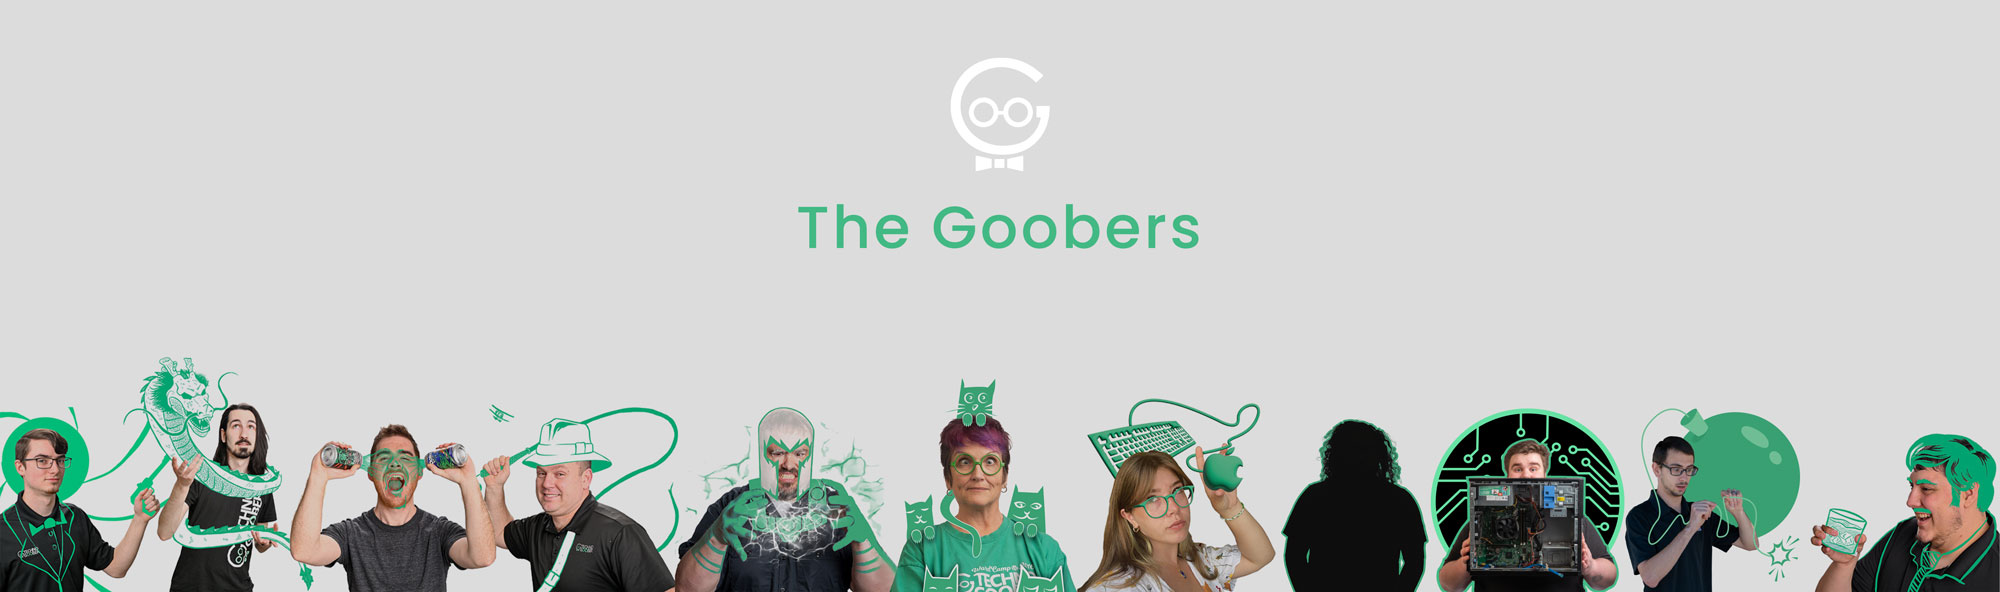 Goobers-Banner-copy